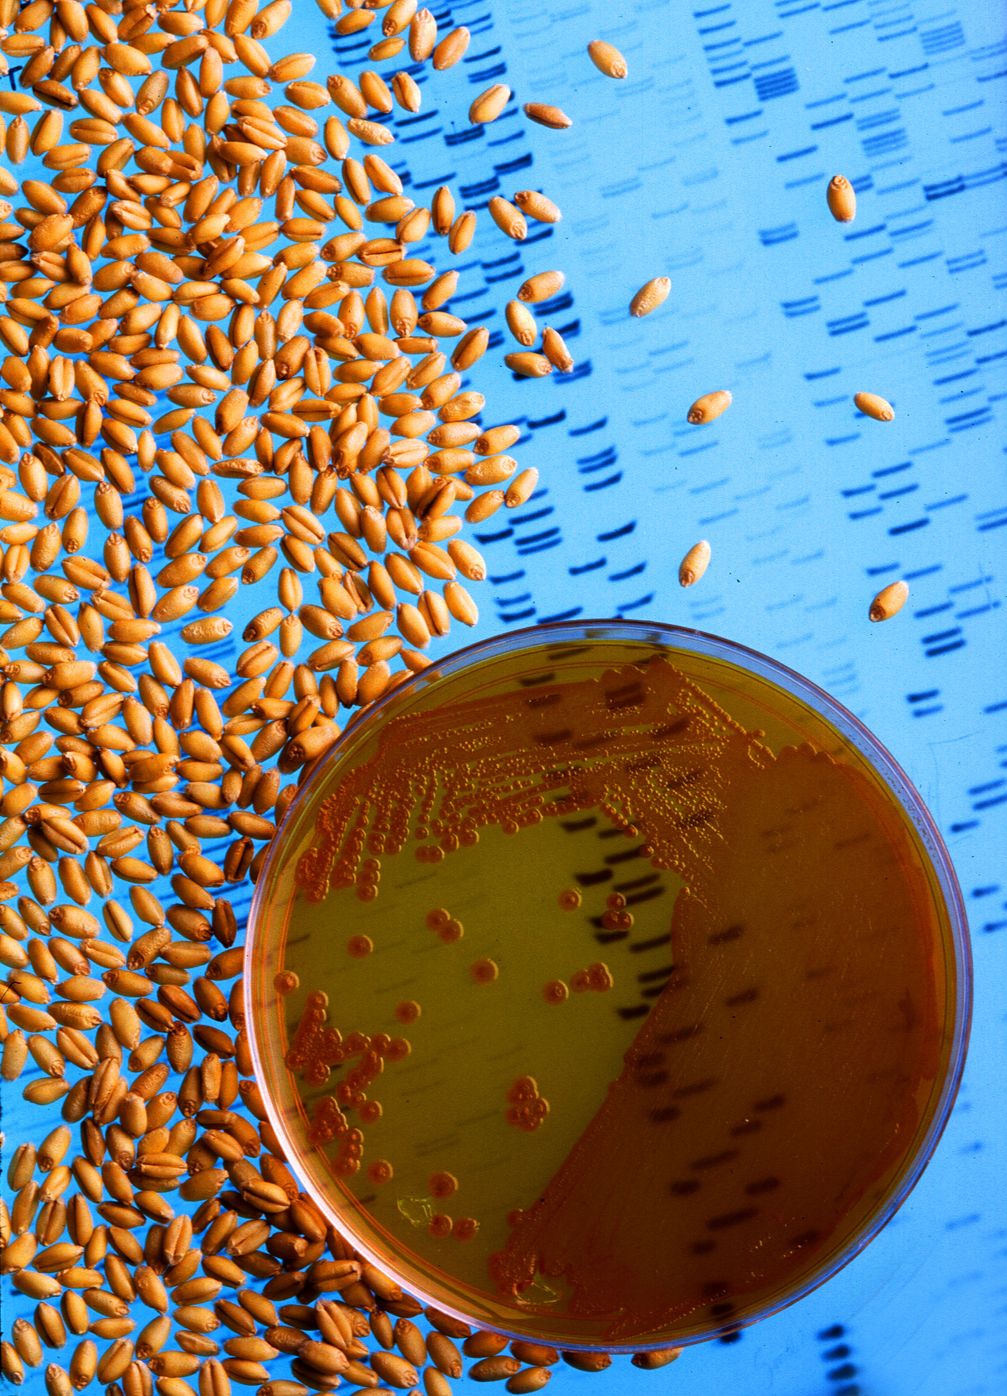 Elemente der Gentechnik: Bakterienkultur in einer Schale, Saatgut und durch Elektrophorese sichtbar gemachte DNA-Fragmente